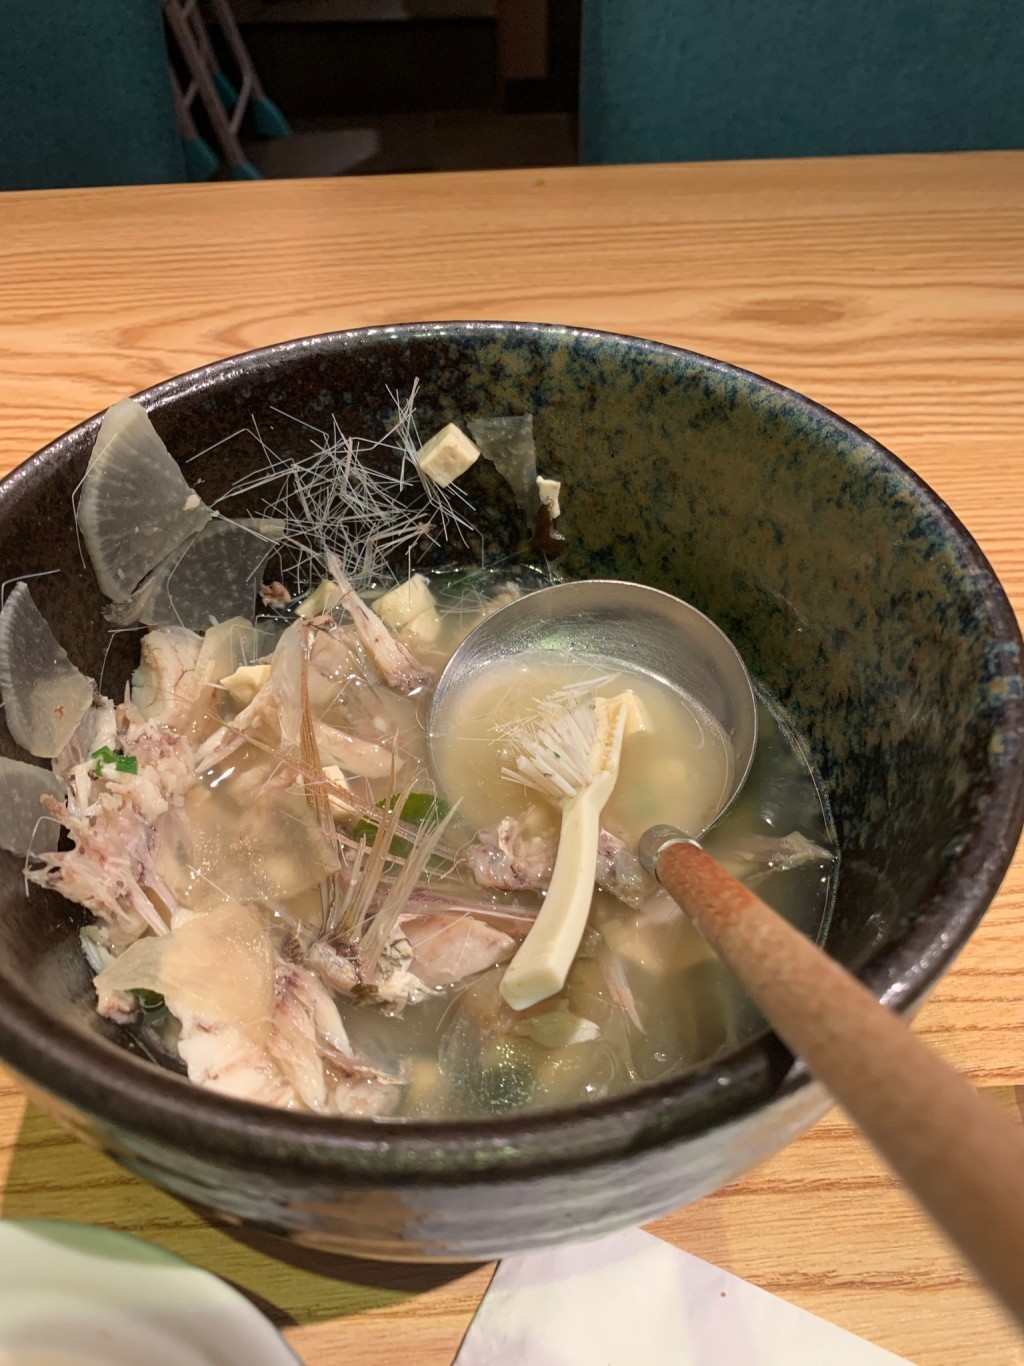 澳门网民光顾日式餐厅饮用鱼汤时竟然发现有牙刷。facebook澳门难食中伏团网民图片